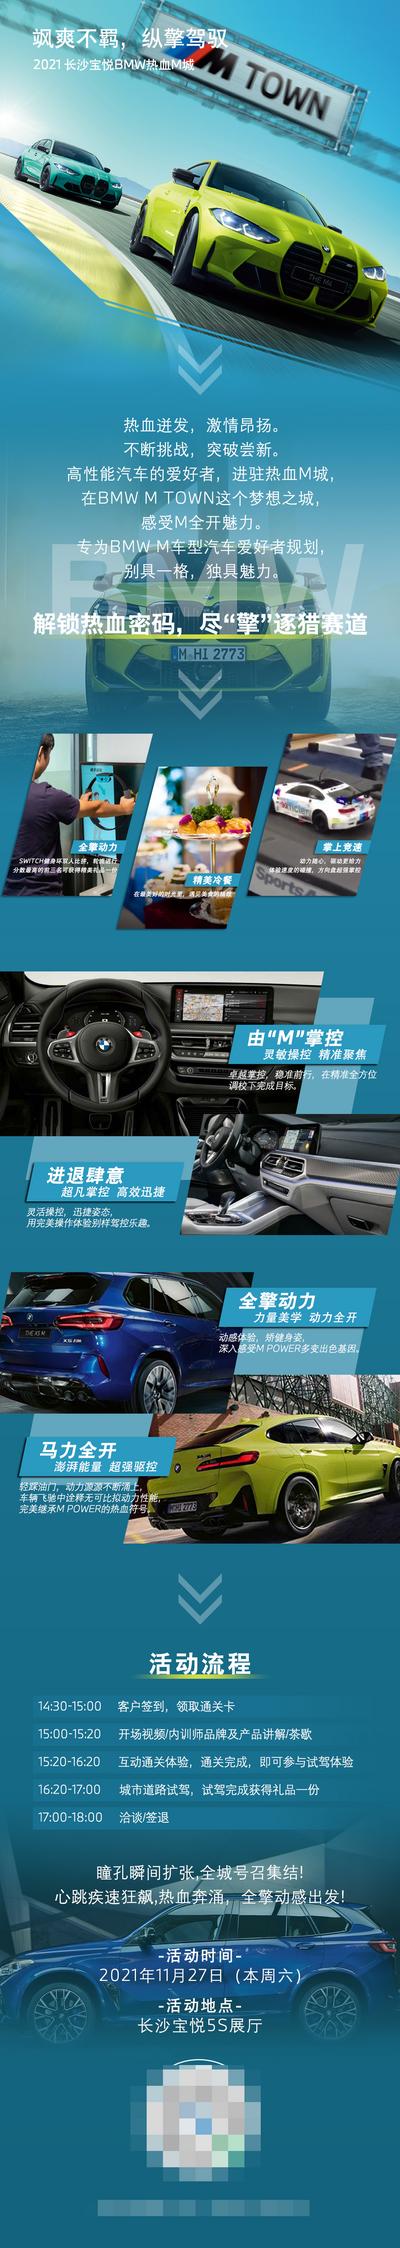 南门网 广告 海报 长图 汽车 专题 宝马 M3 运动 激情 性能